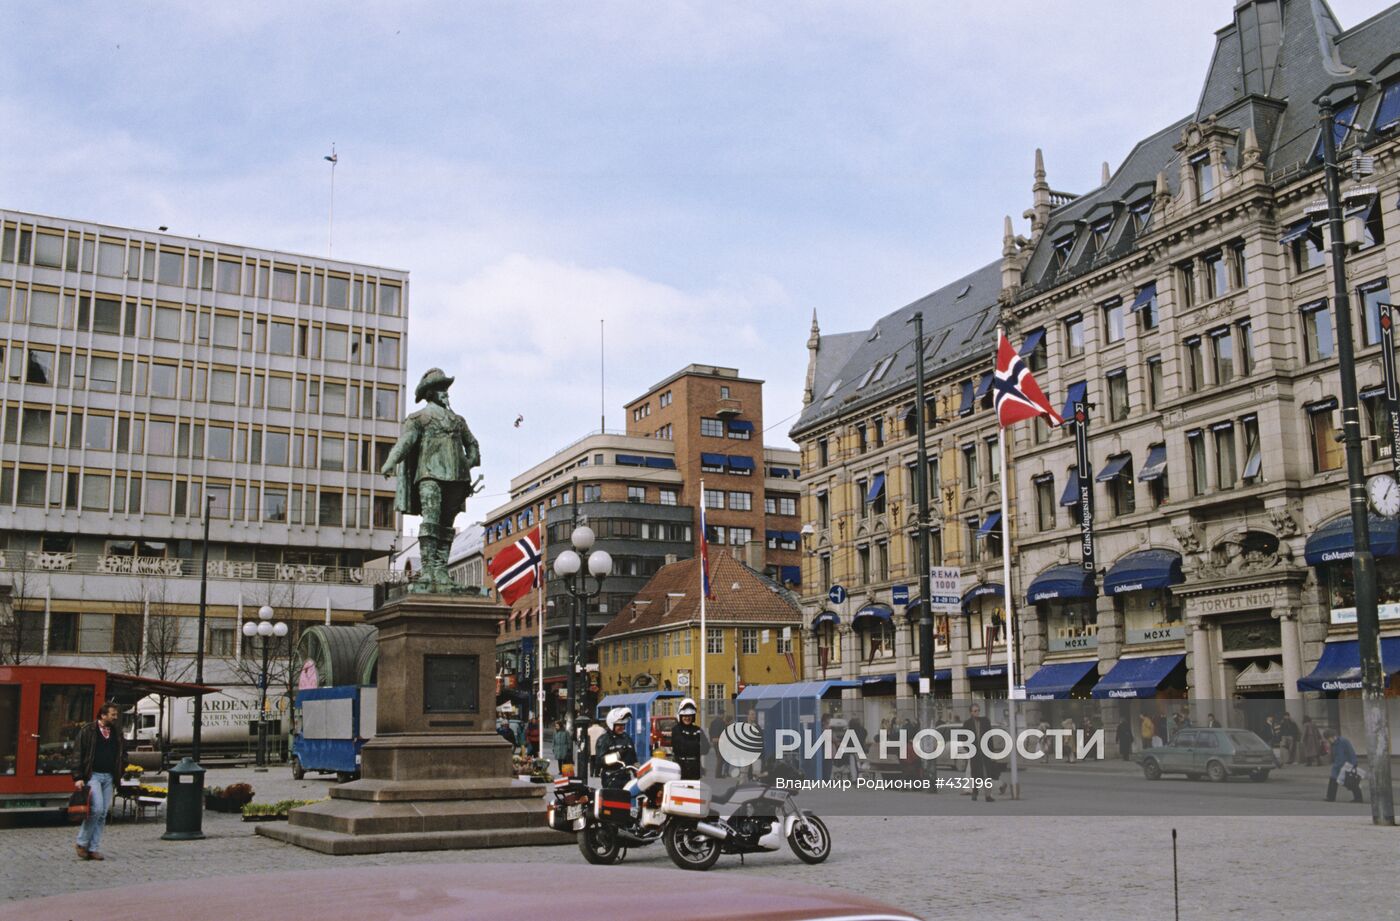 Памятник королю Дании и Норвегии Кристиану IV